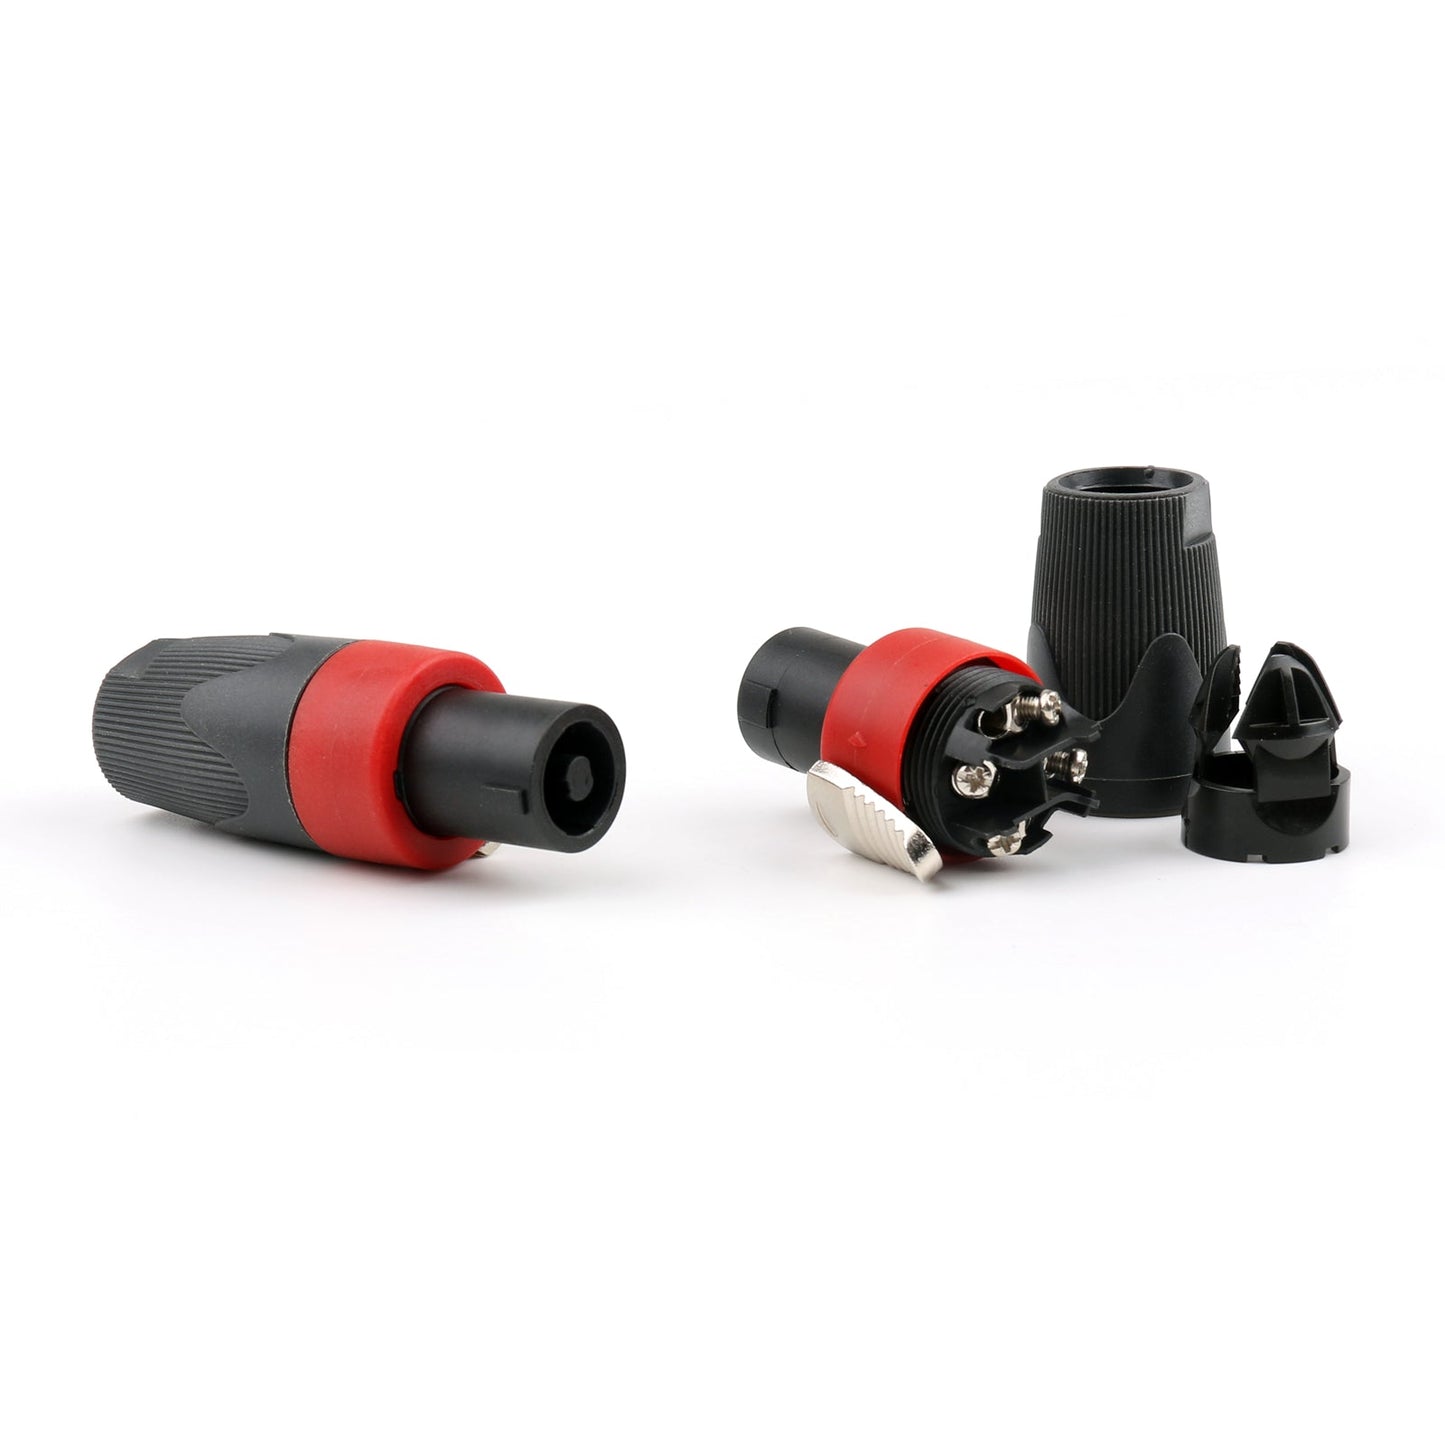 Lot de 2 connecteurs de câble audio compatibles Speakon 4 broches mâles de haute qualité rouge